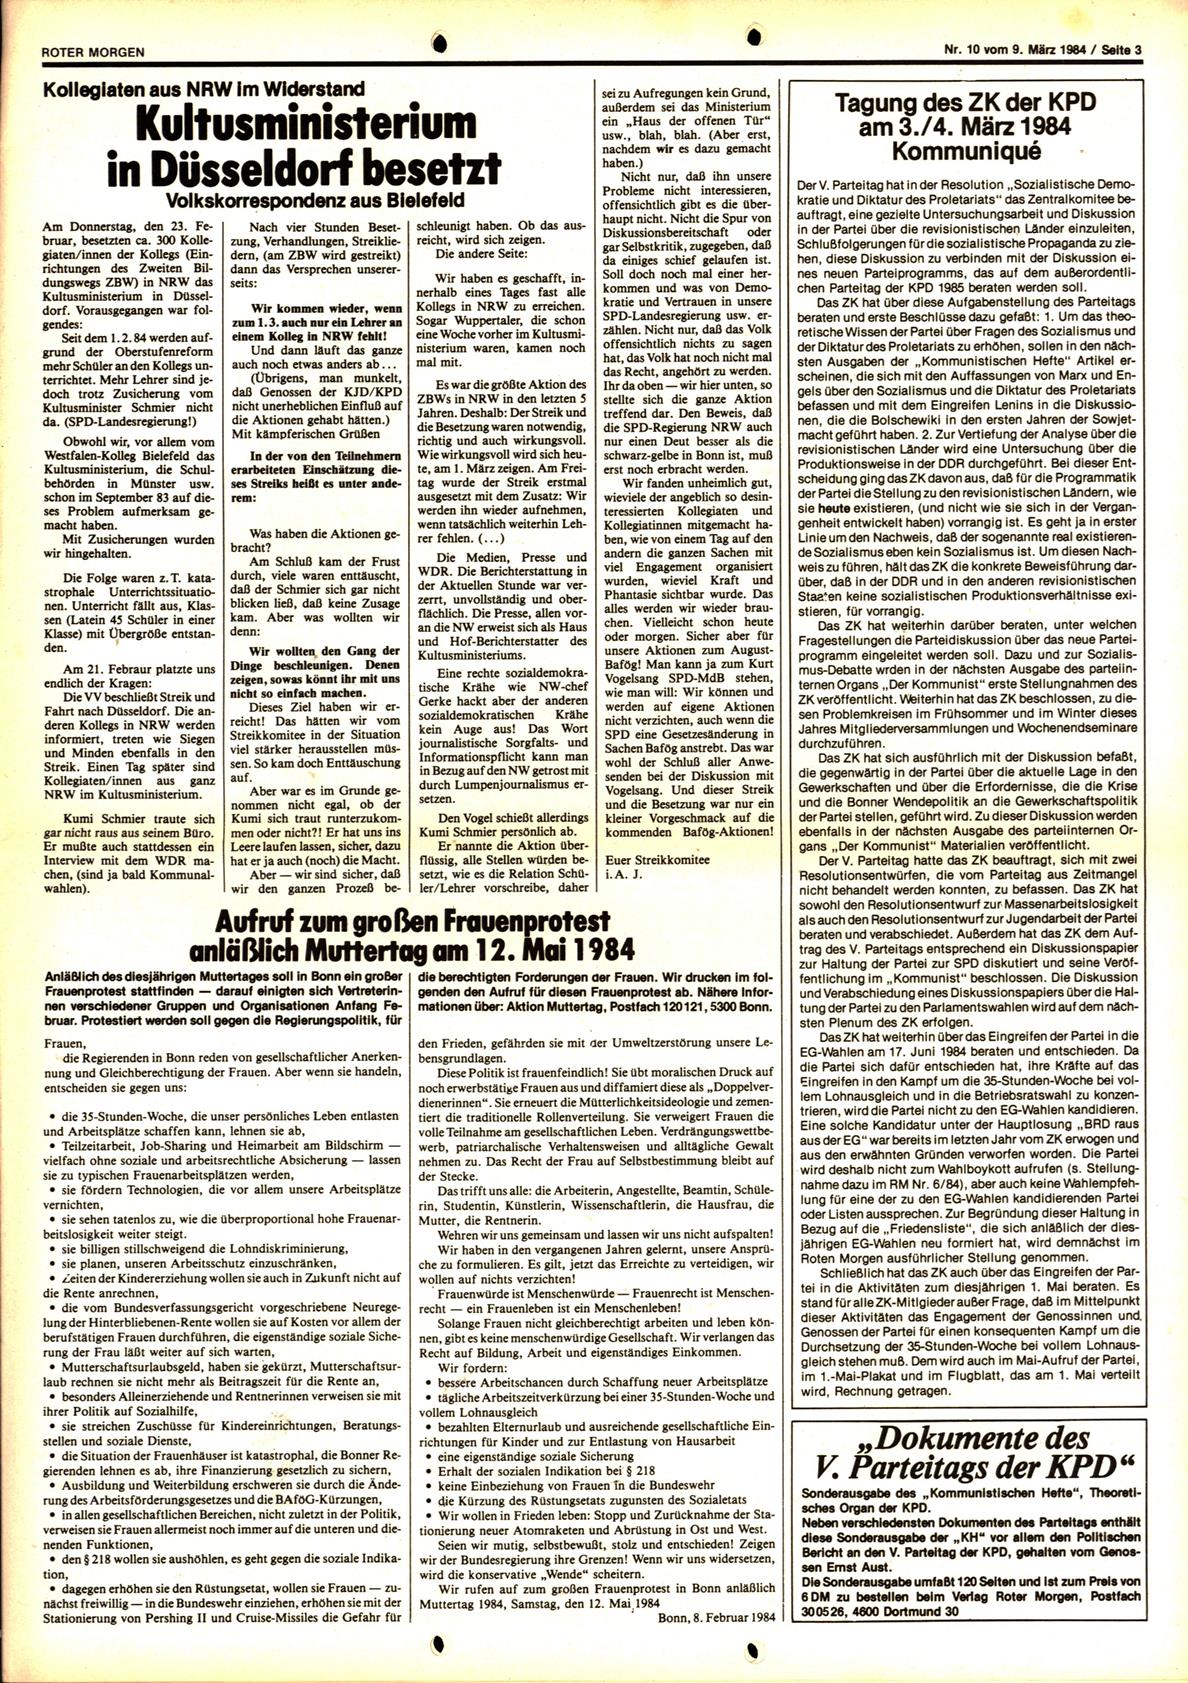 Roter Morgen, 18. Jg., 9. März 1984, Nr. 10, Seite 3